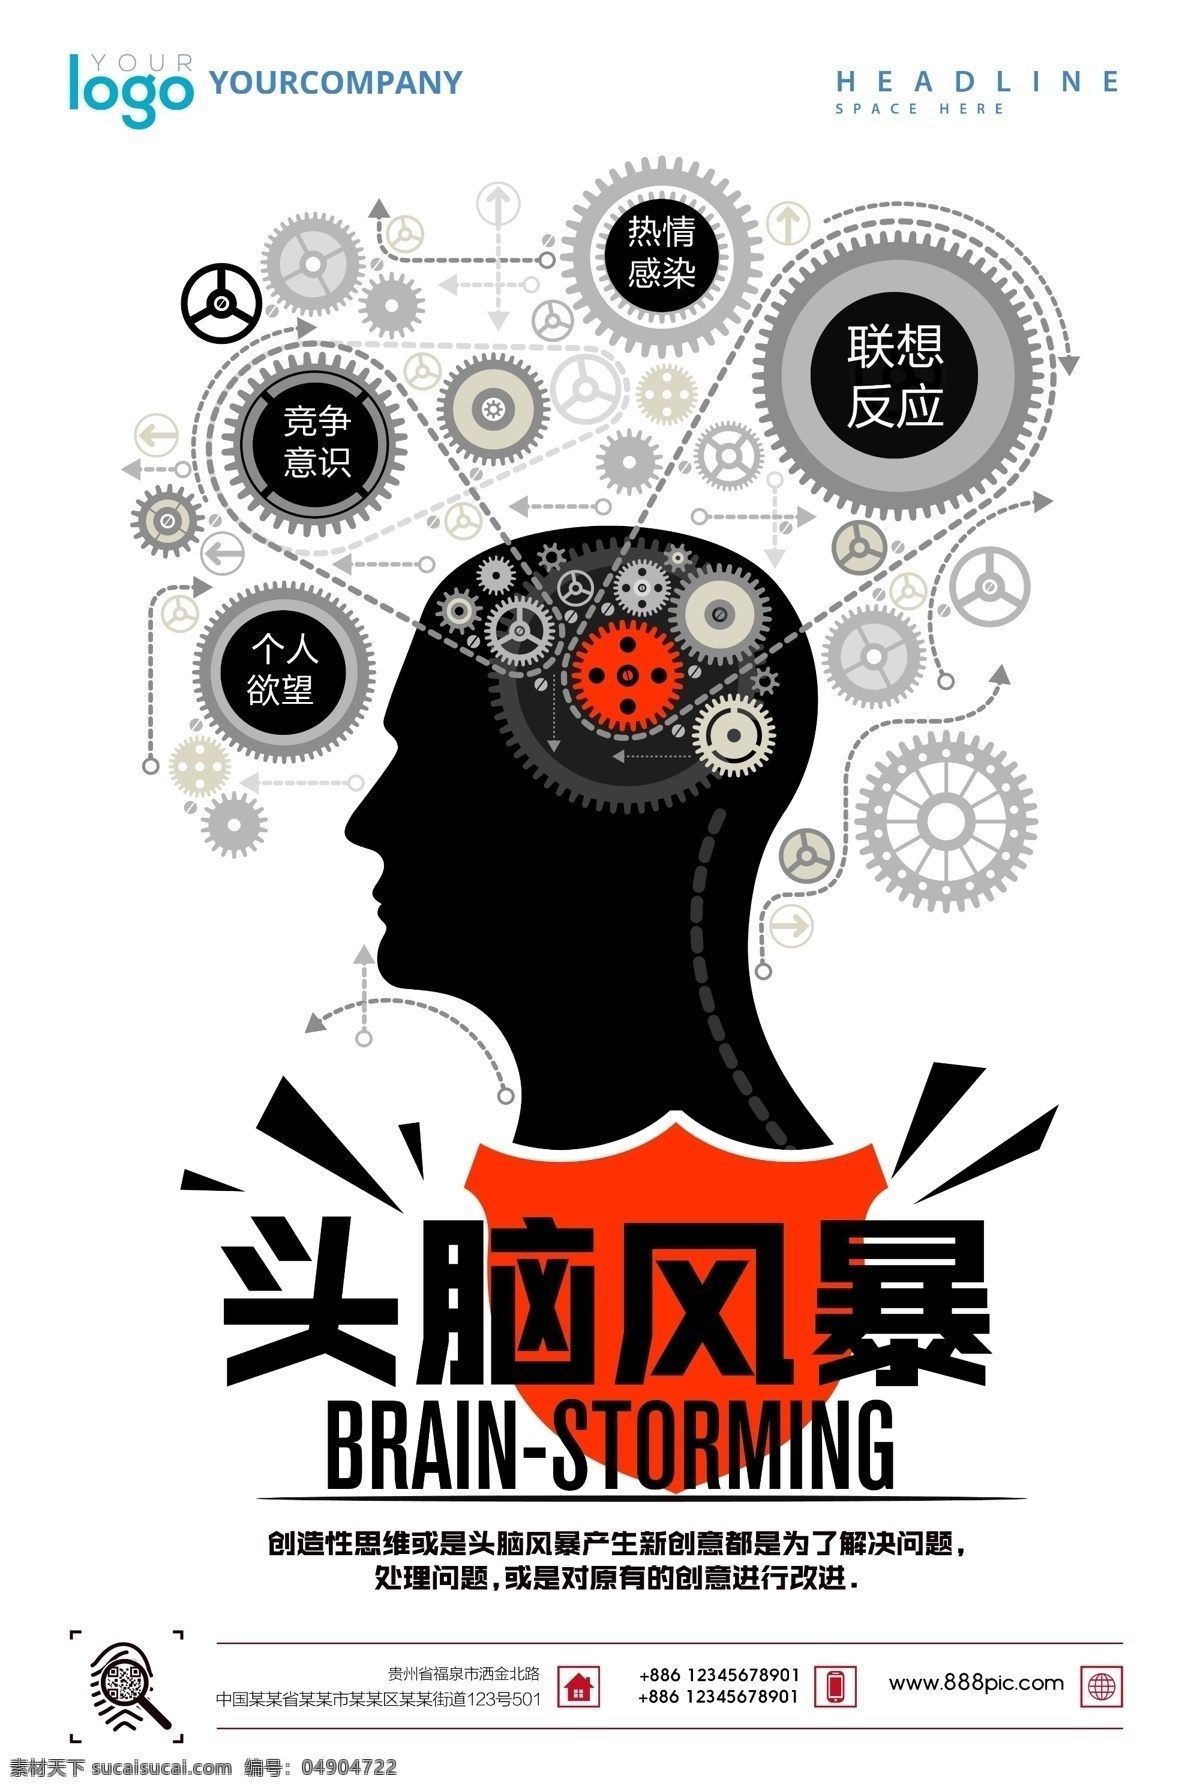 创意 广告 头脑 风暴 创意广告 头脑风暴 机械素材 创意设计 贵州福泉